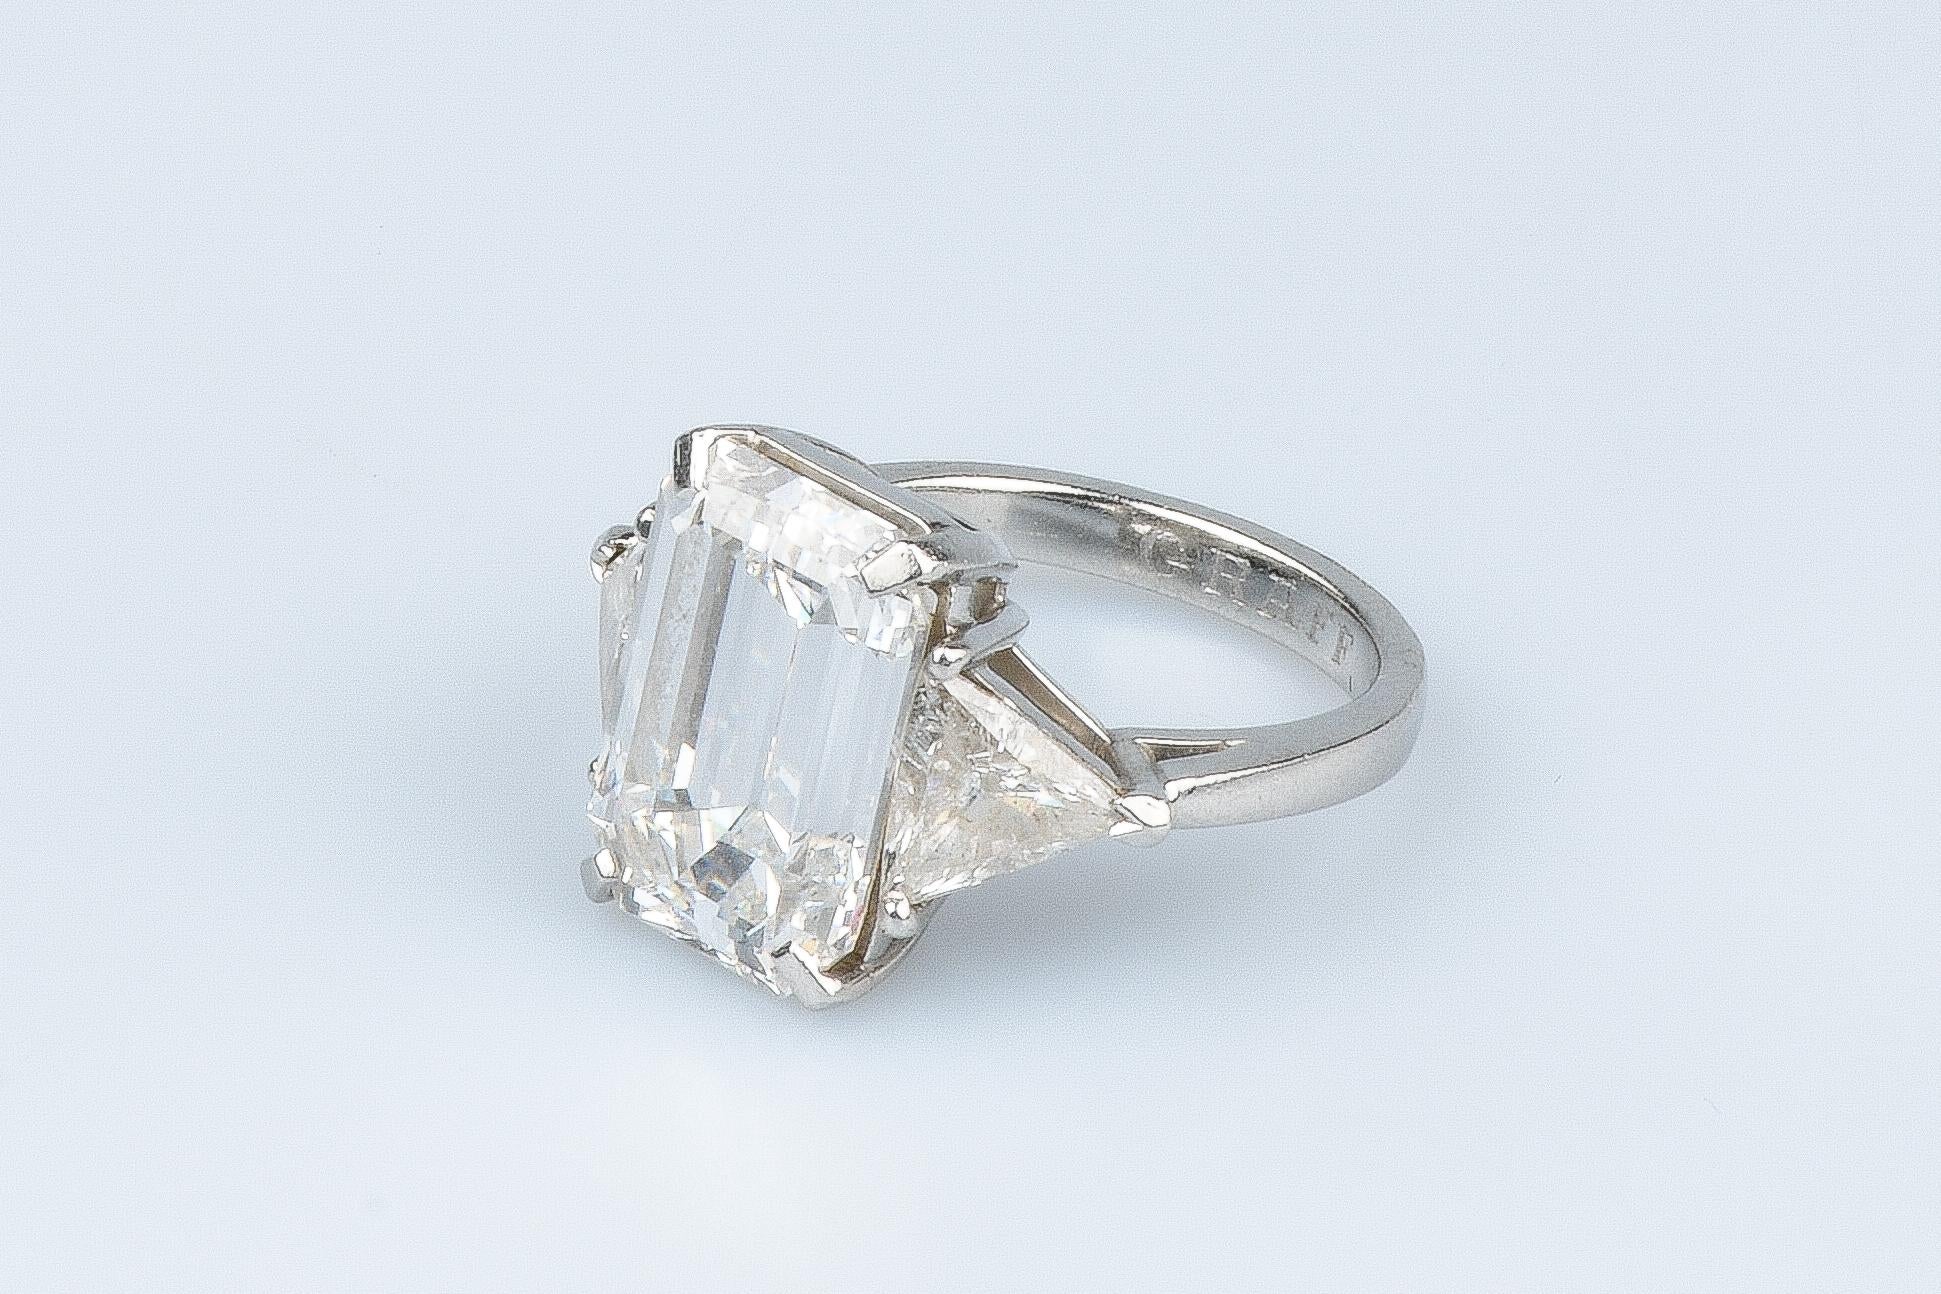 WGI certified 10.70 carat emerald cut diamond - 1.40 carat trillion cut diamonds For Sale 12